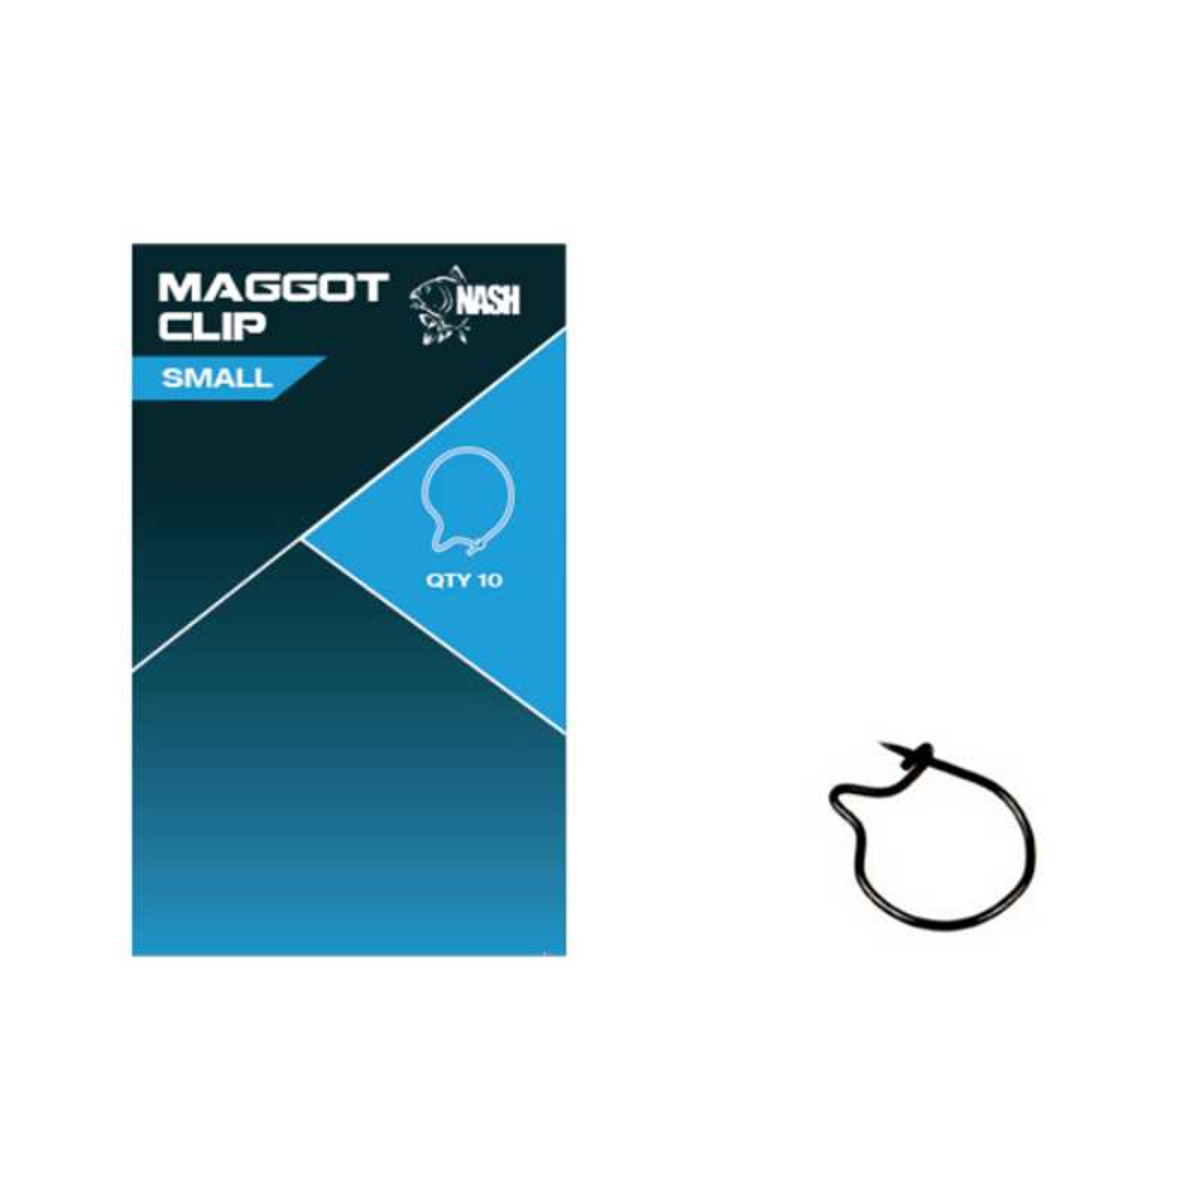 Nash Maggot Clips - Small